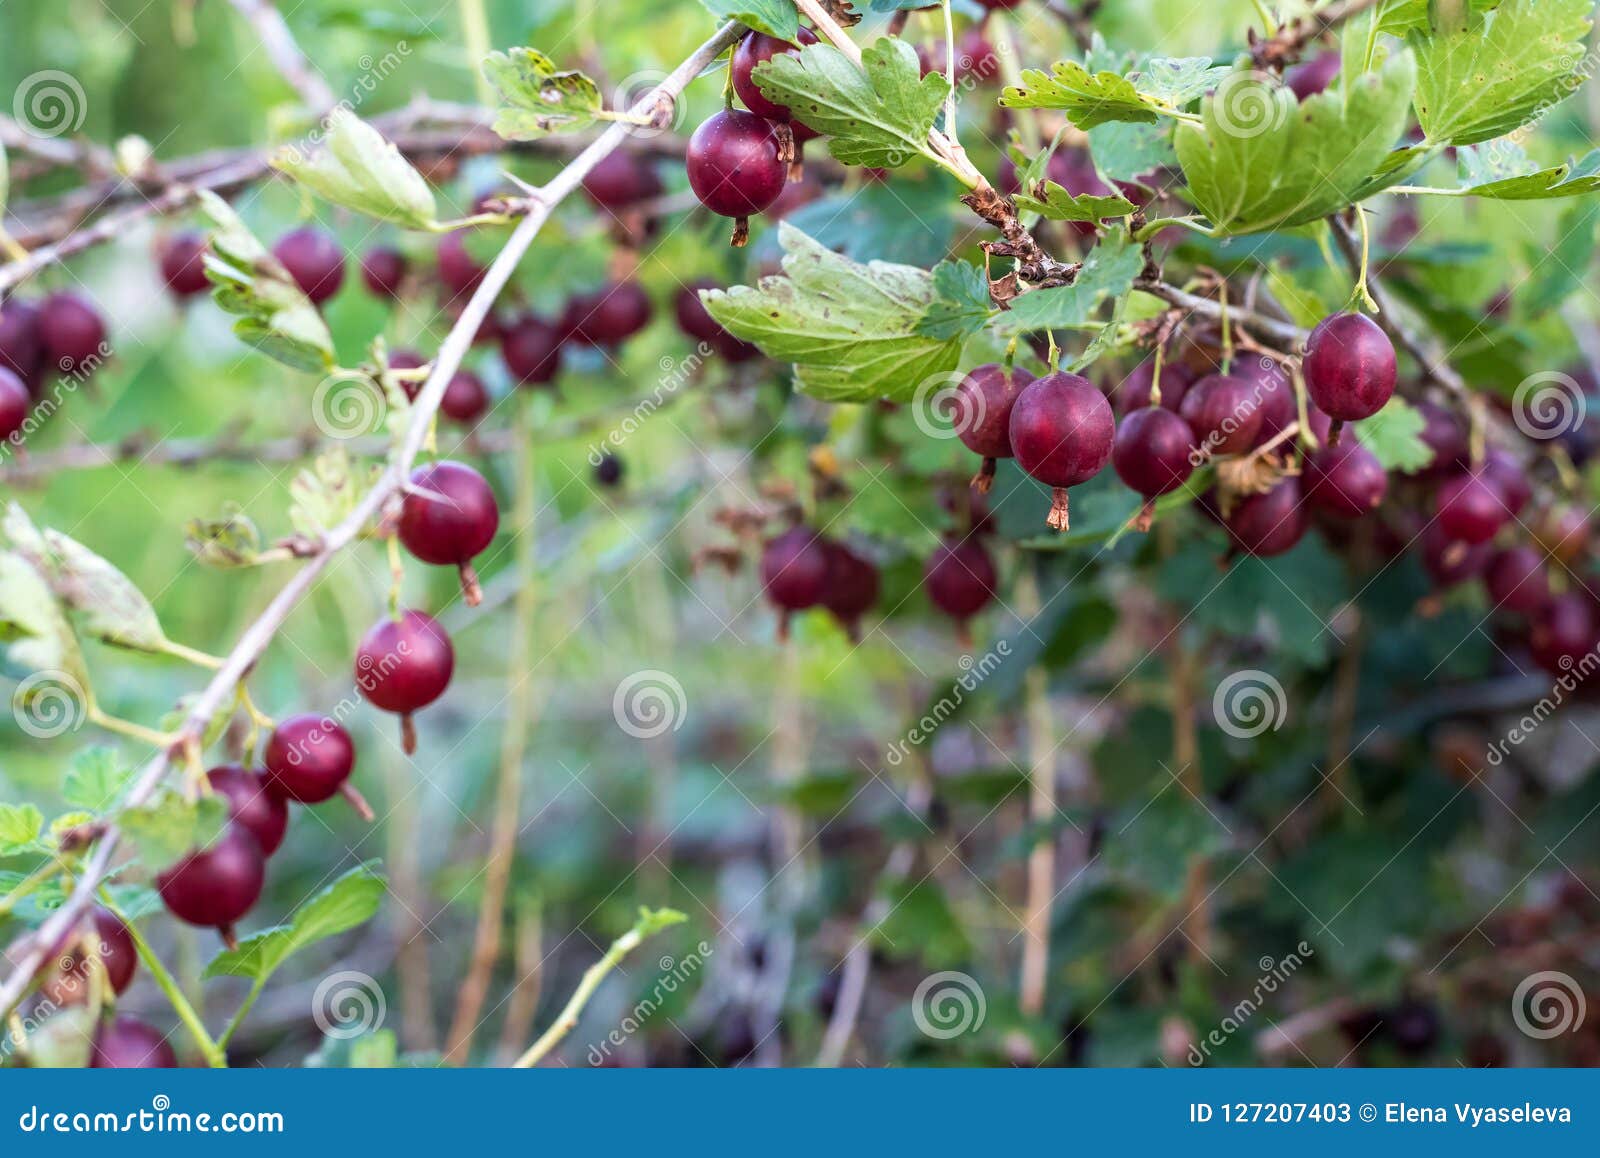 鹅莓醋栗uva-crispa -果子灌木 秋天本质照片俄国结构树 库存图片 - 图片 包括有 玻色子, 背包: 103330539